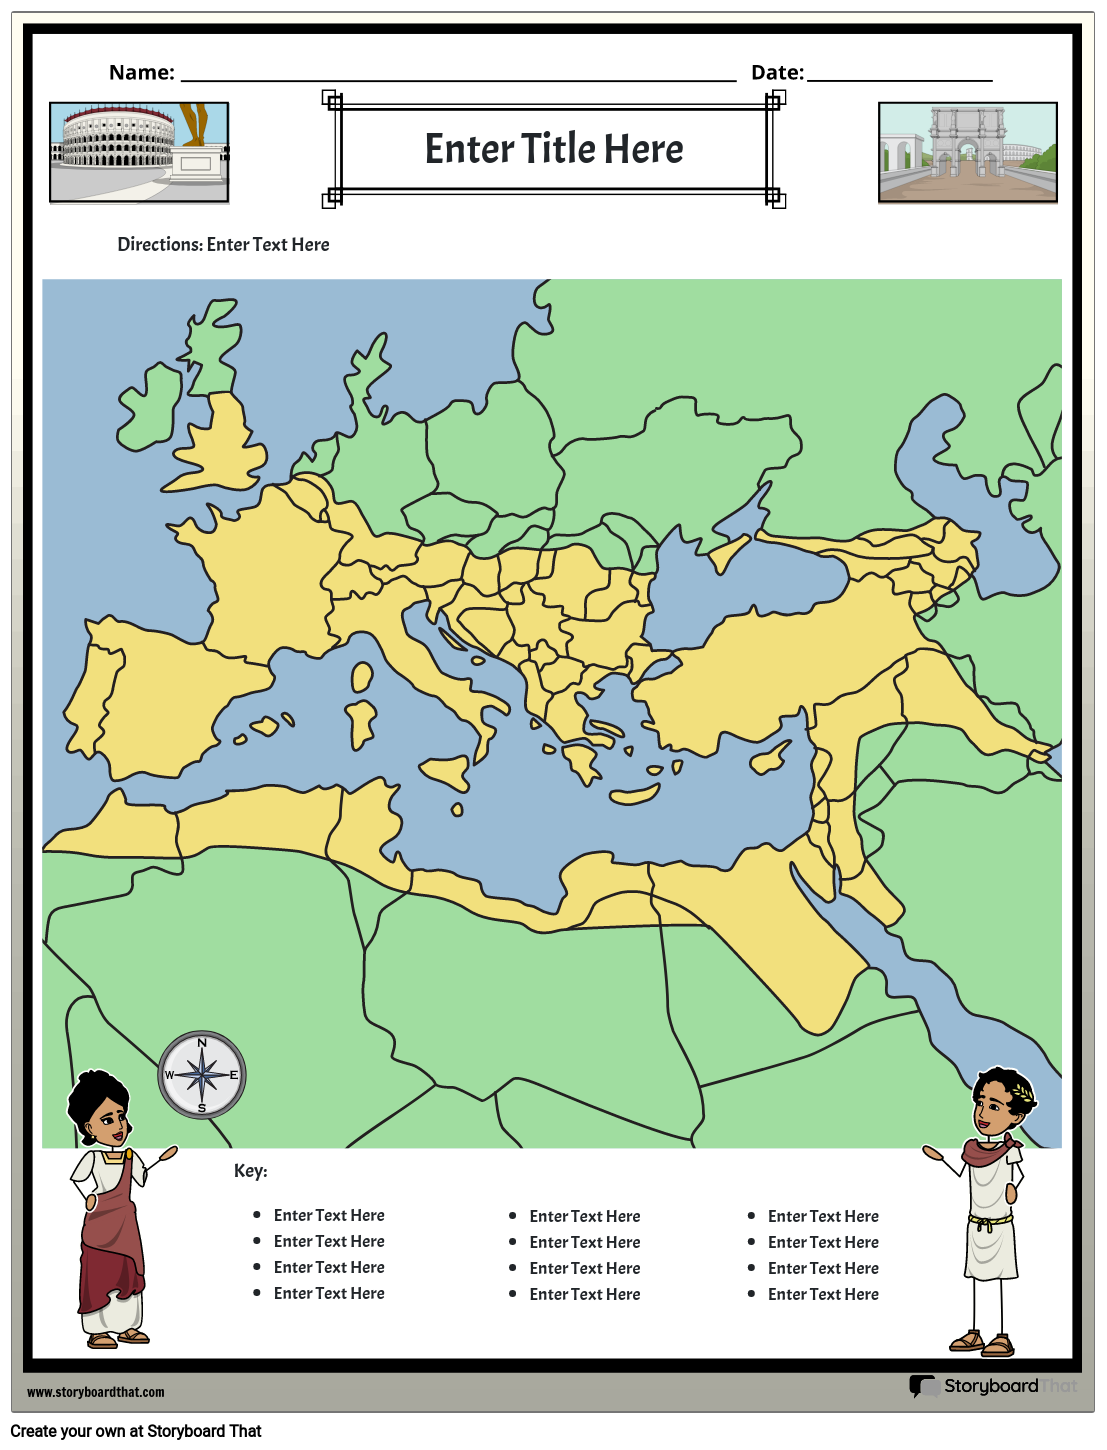 Roma İmparatorluğu Haritası